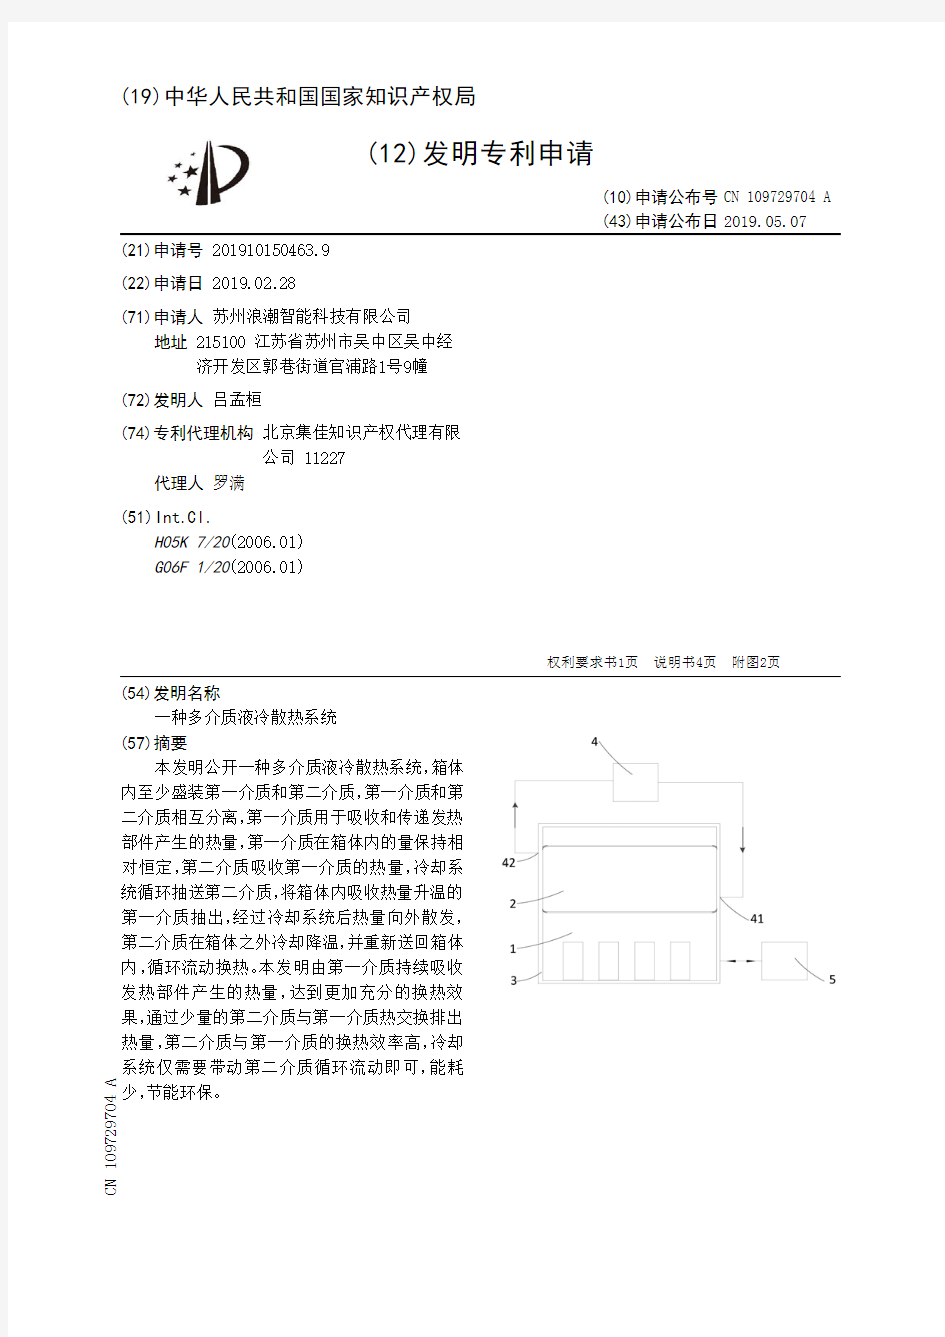 【CN109729704A】一种多介质液冷散热系统【专利】